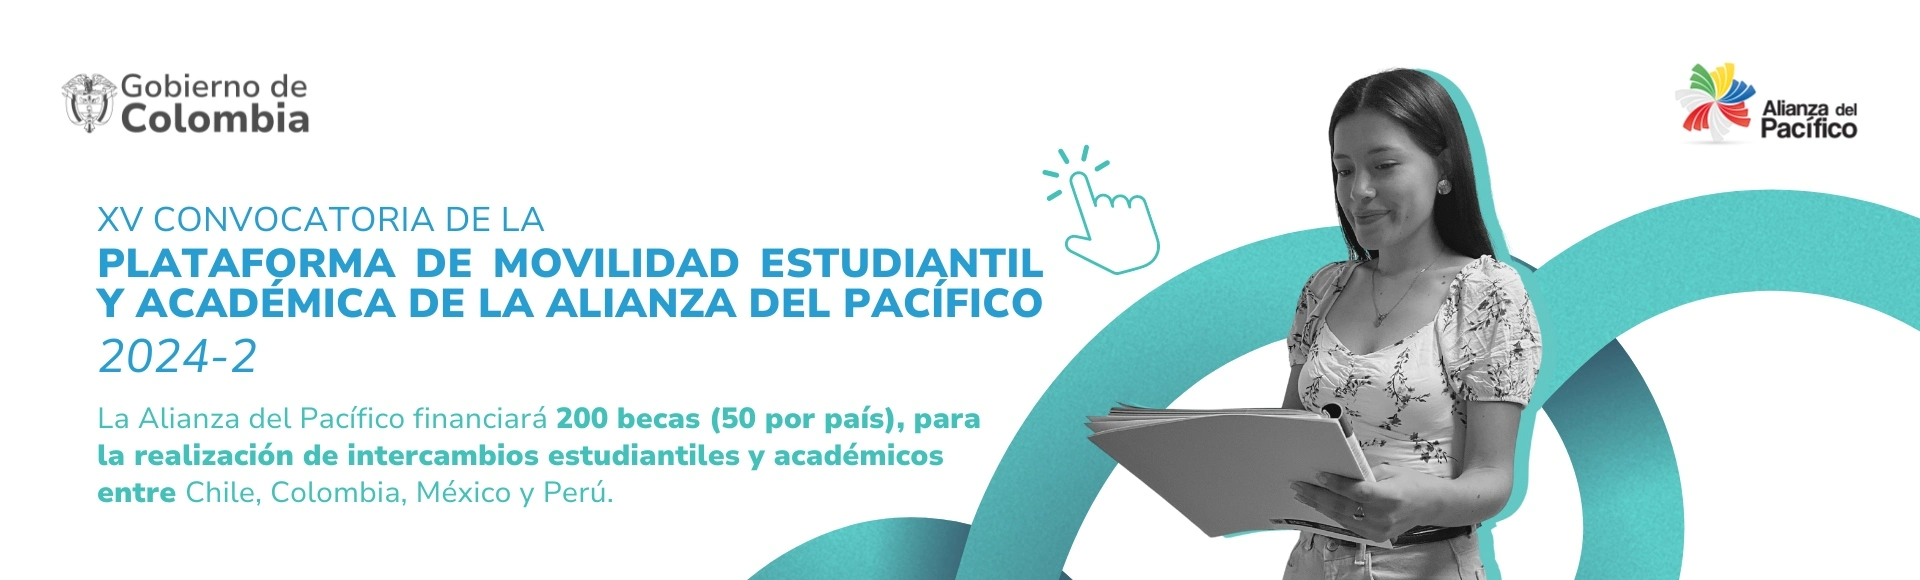 XV convocatoria de la plataforma de movilidad estudiantil y académica de la Alianza del Pacífico. 200 becas, cincuenta po país